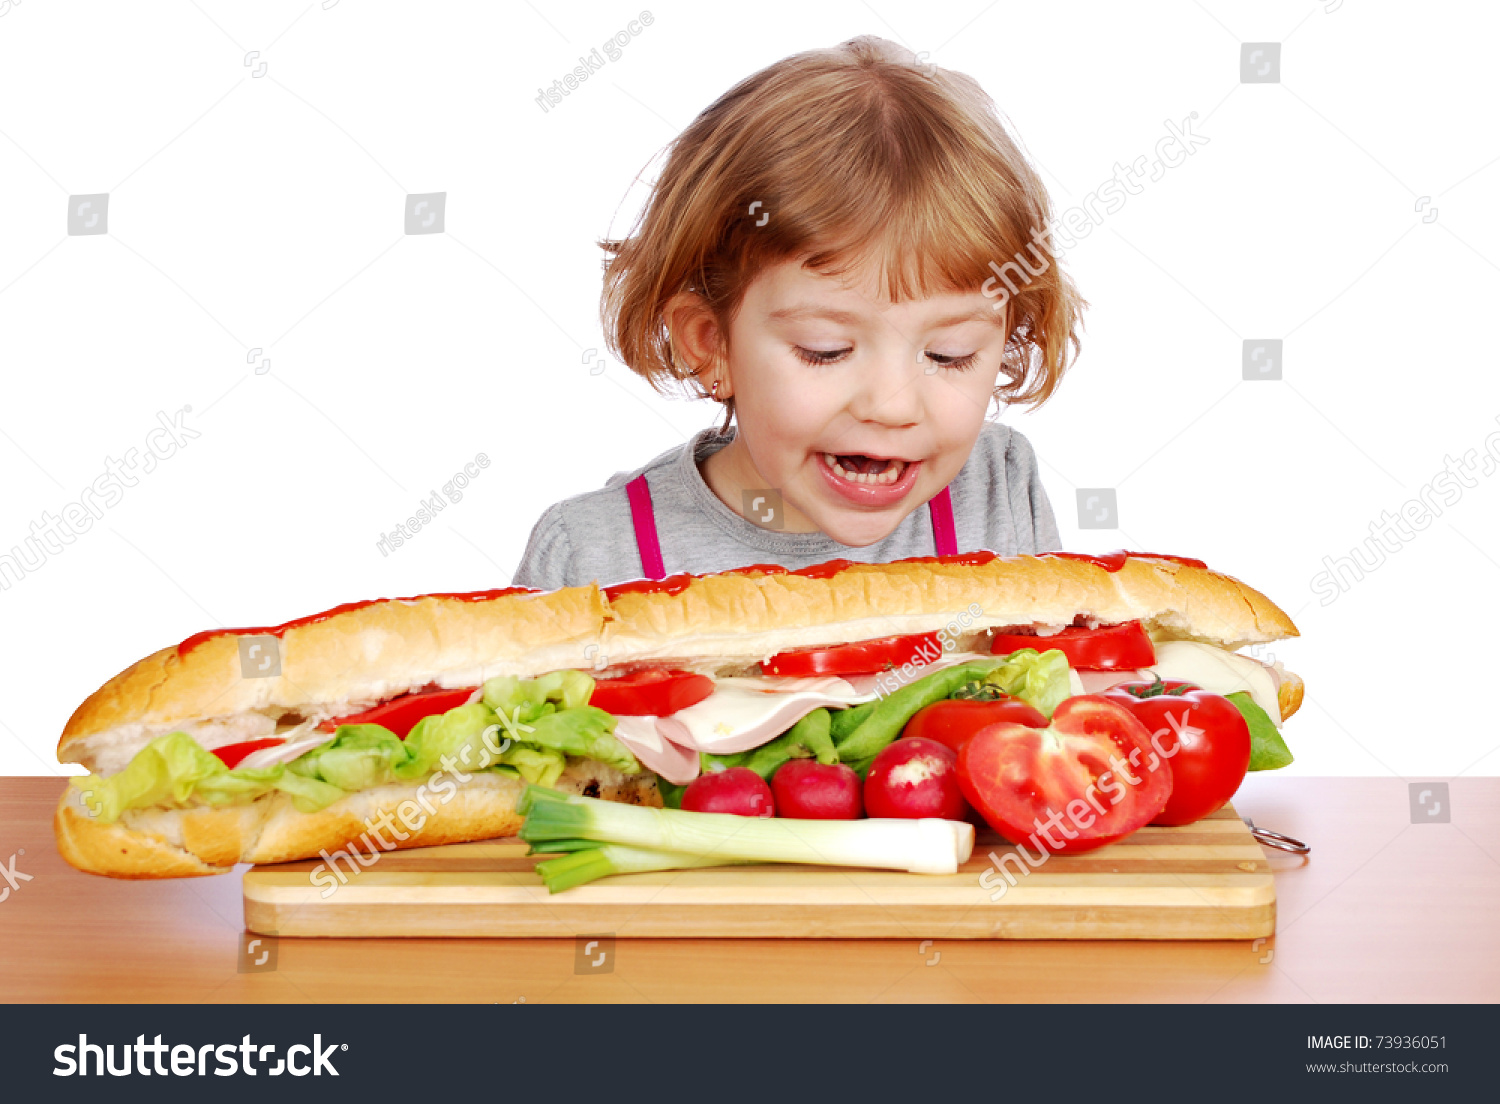 Ребенок ест бутерброд